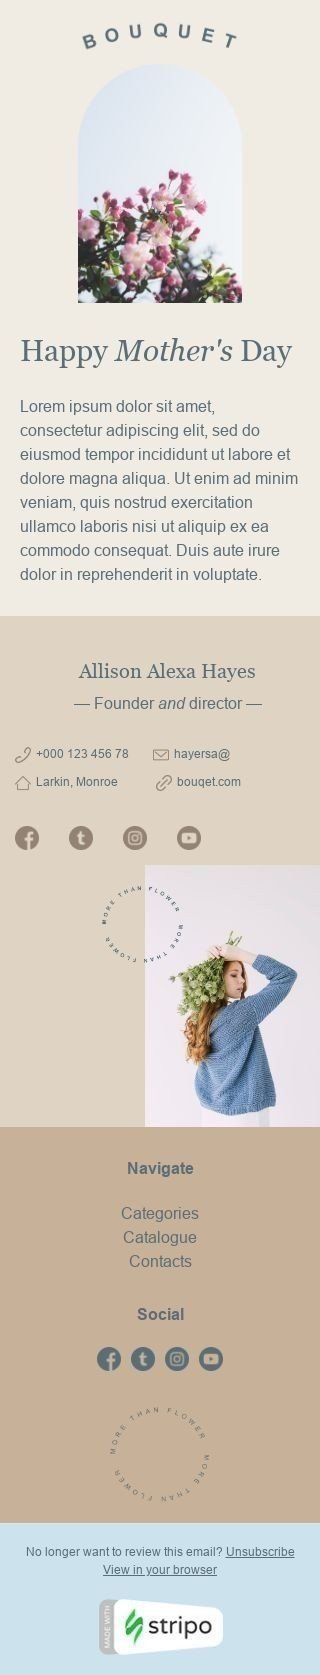 Plantilla de correo electrónico «Haz feliz a tu mamá» de Promoción para la industria de Regalos y flores Vista de móvil